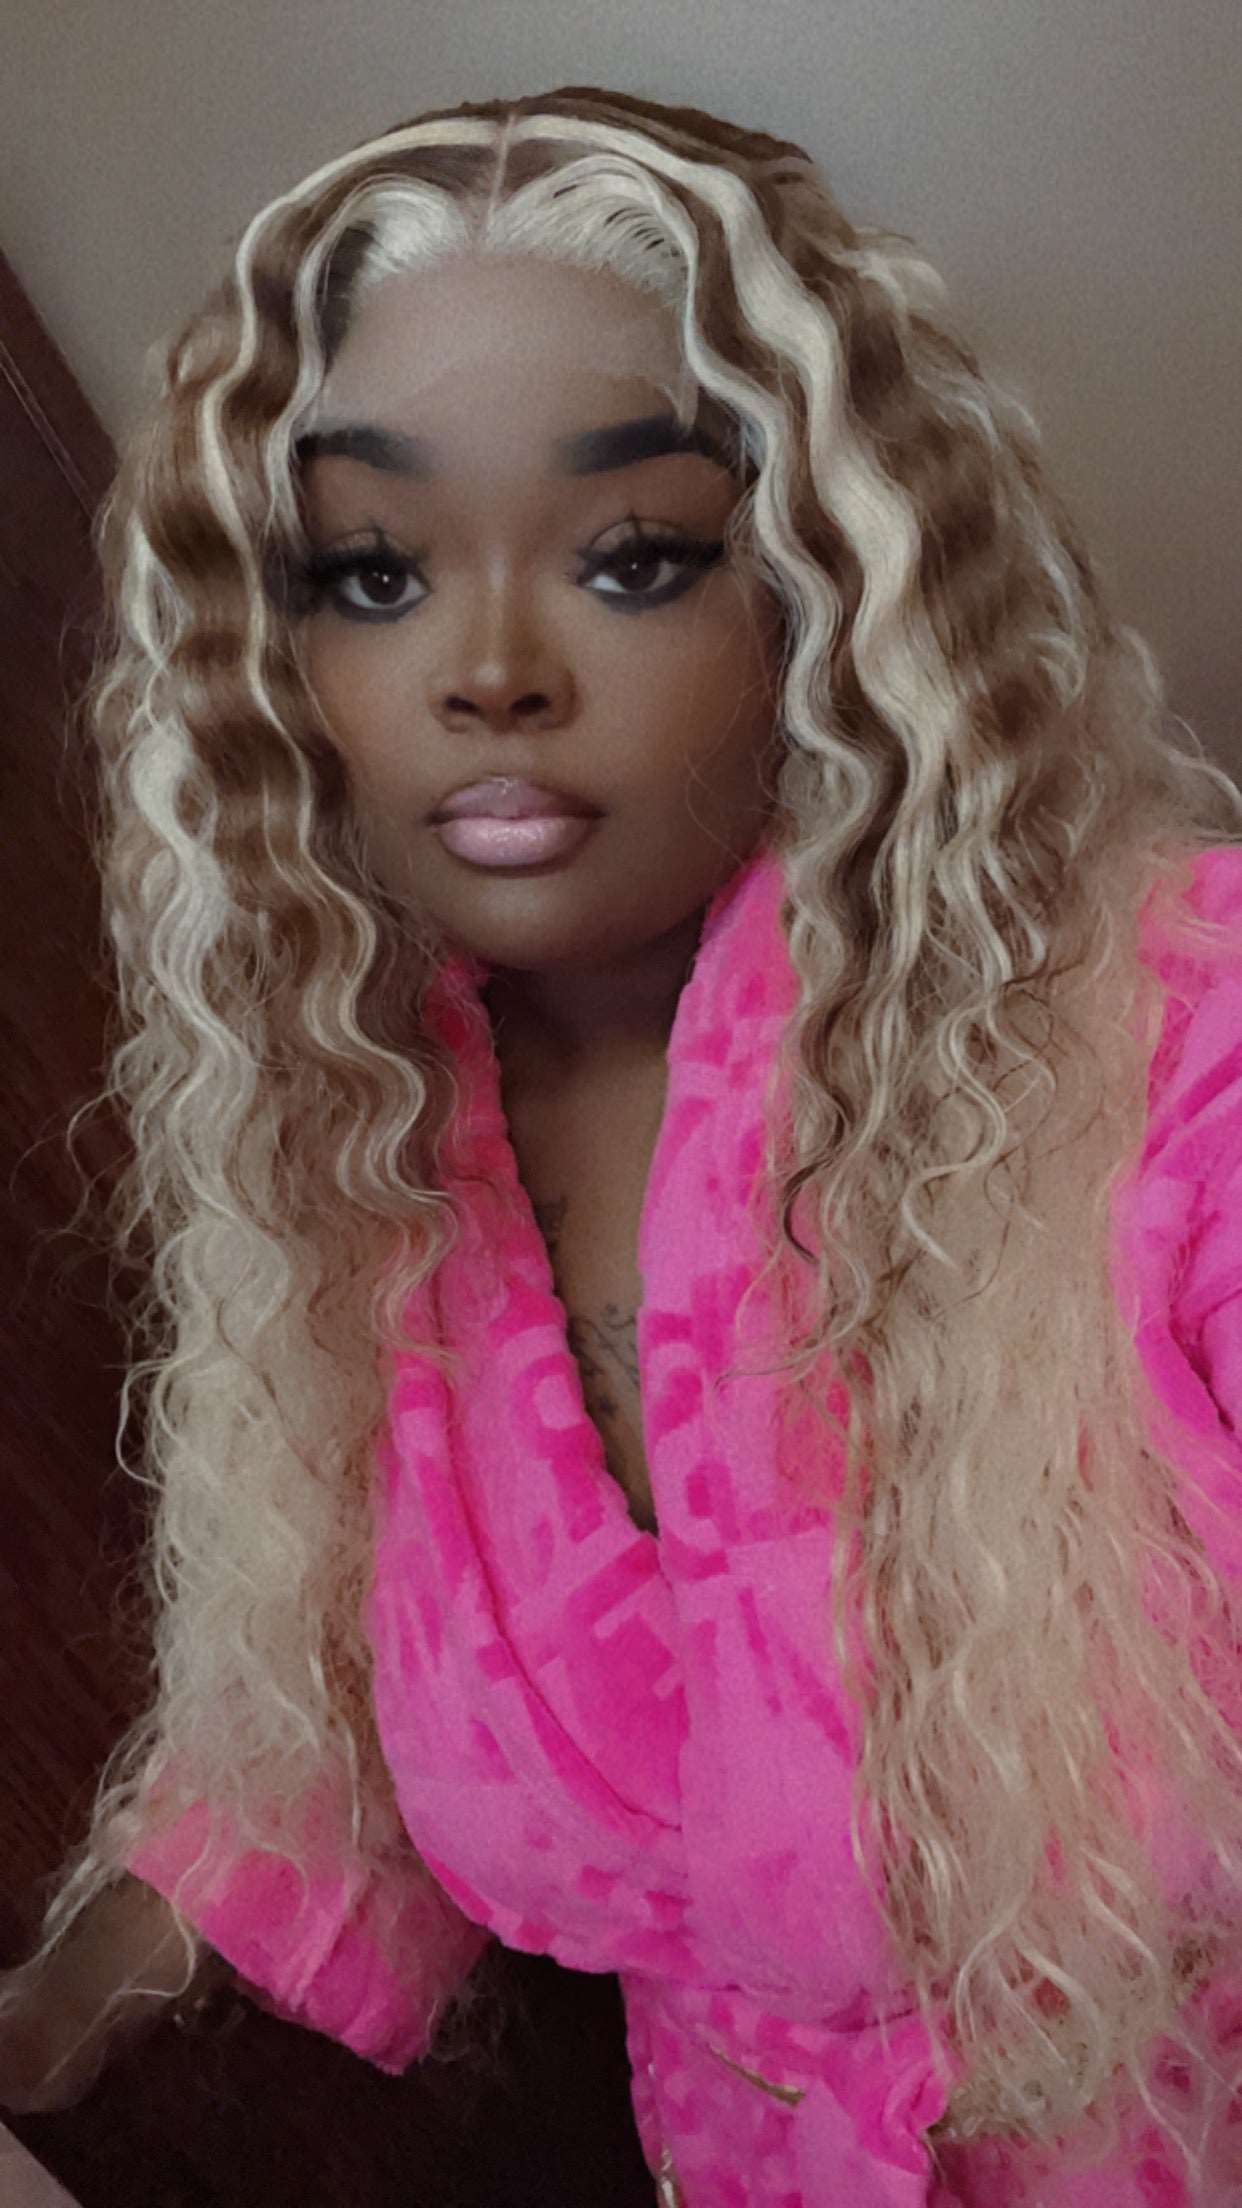 Gina Waters Custom Wig | Wig, Wigs | Pretty N Pink Hair & More